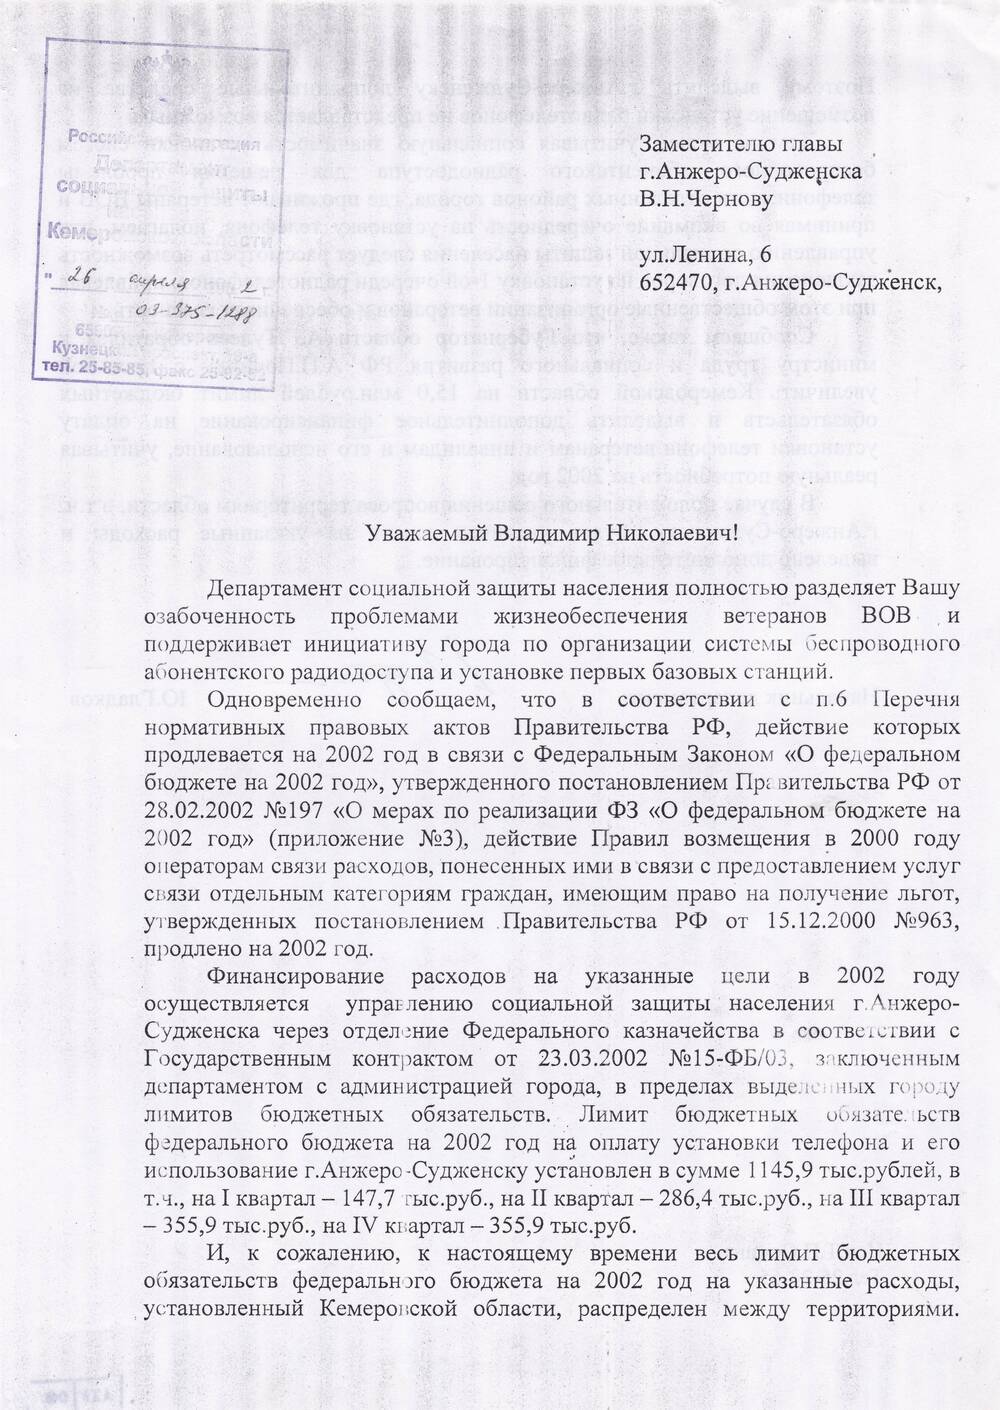 Ответ начальника департамента соцзащиты населения Кемеровской области